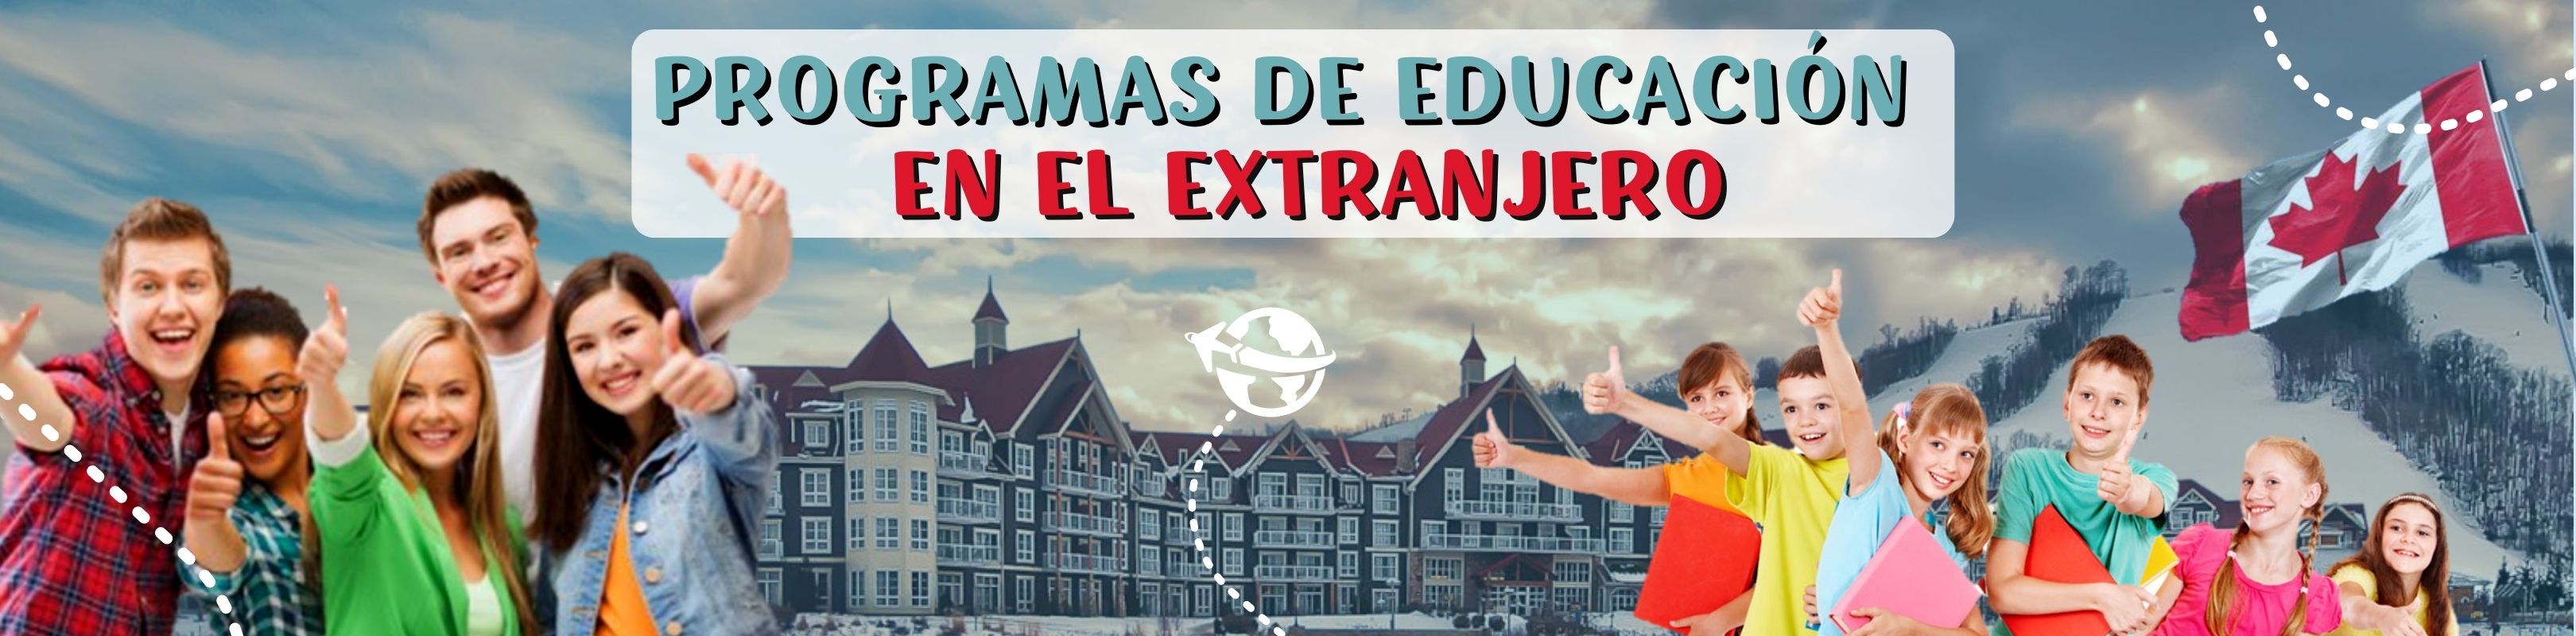 EDUCACIÓN_EN_EL_EXTRANJERO 